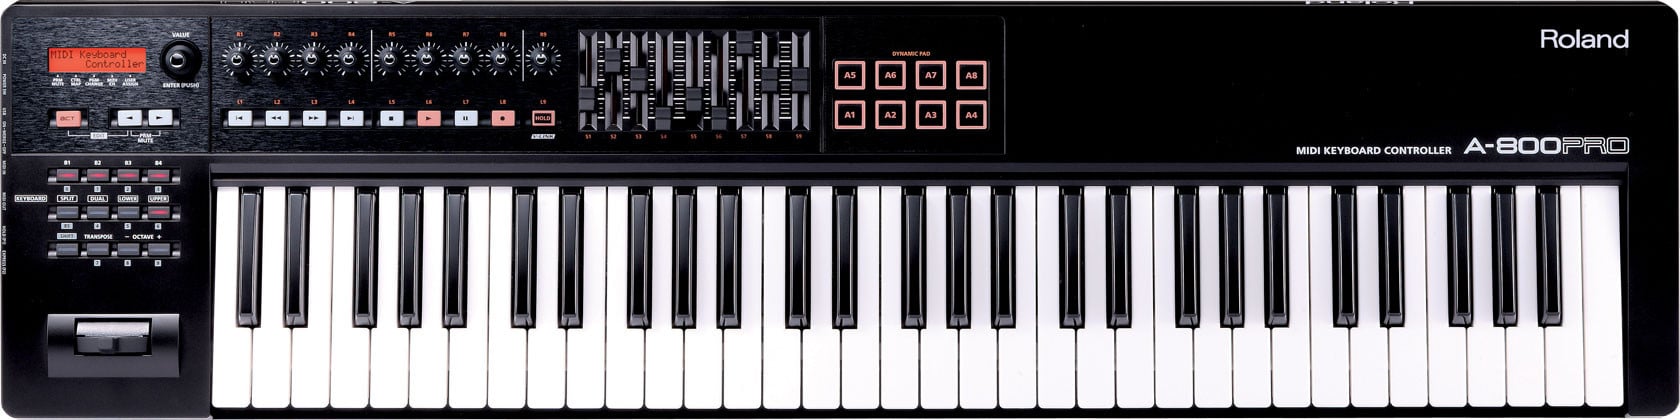 Roland A-800PRO-R - MIDI KEYBOARD CONTROLLER